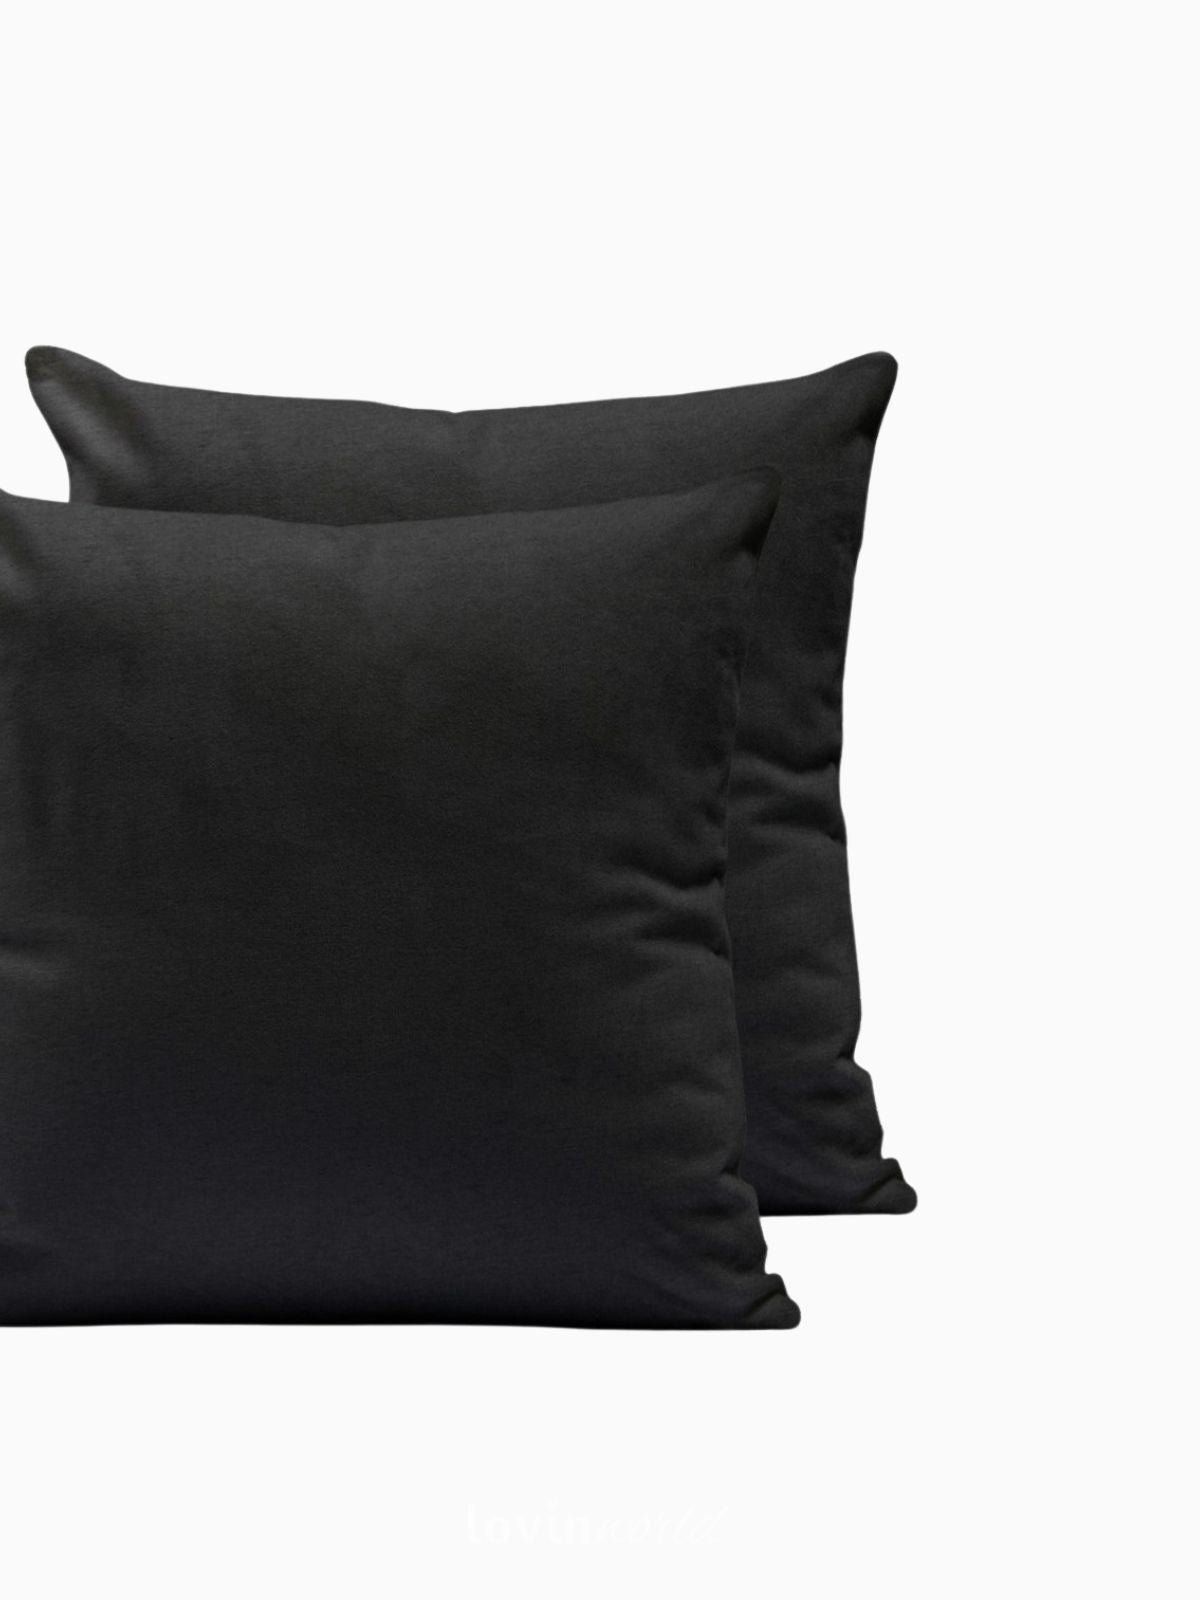 2 Federe per cuscino Amber in colore nero 50x50 cm.-3